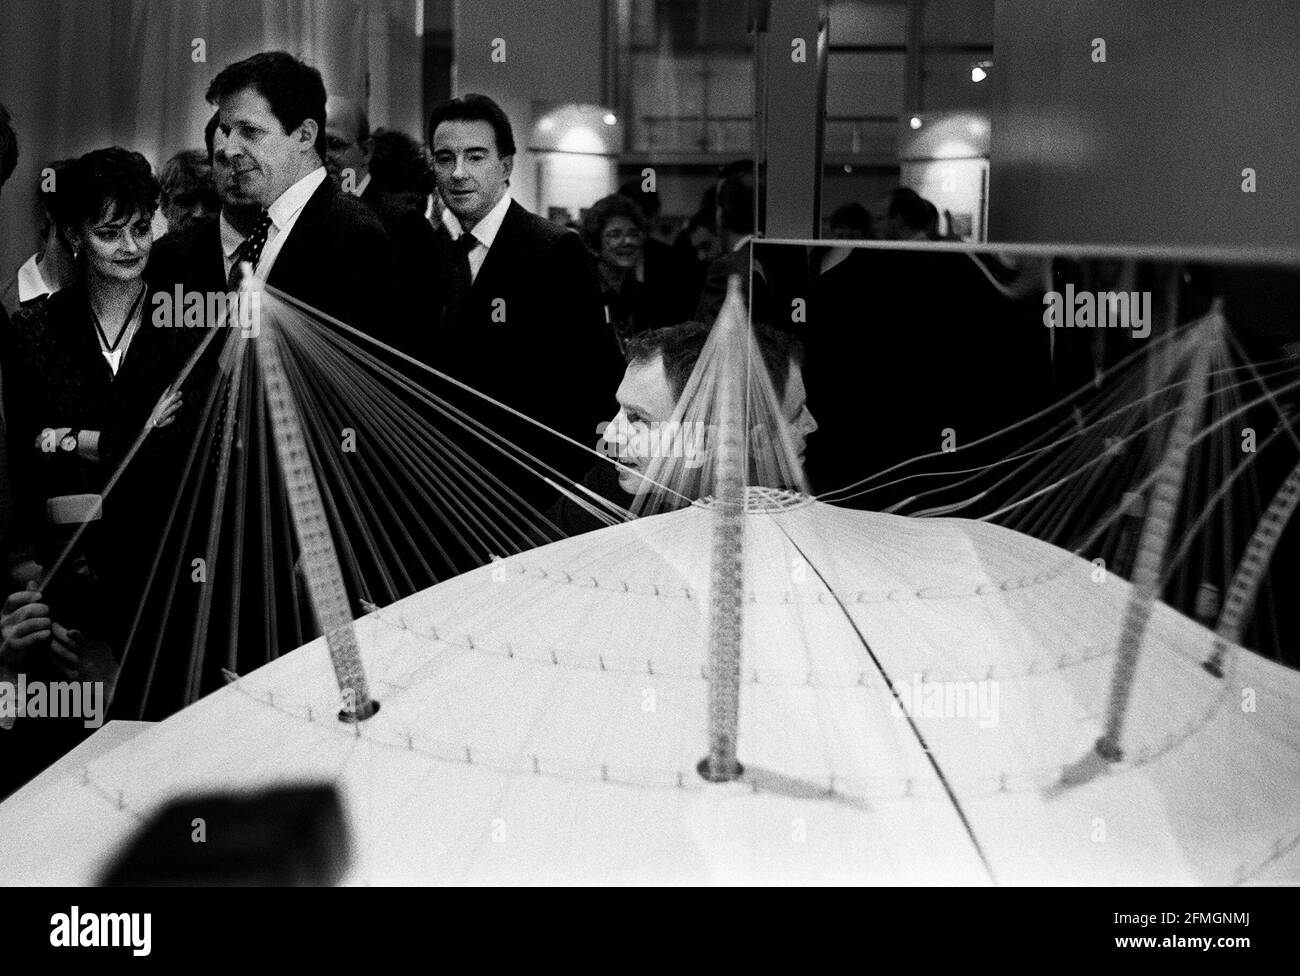 Tony Blair à la conférence de presse à la salle des fêtes en février 1998 La femme Cherie Blair et Peter Mandelson et Alastair Campbell à Lancez le contenu qui sera dans le Dôme du millénaire Banque D'Images